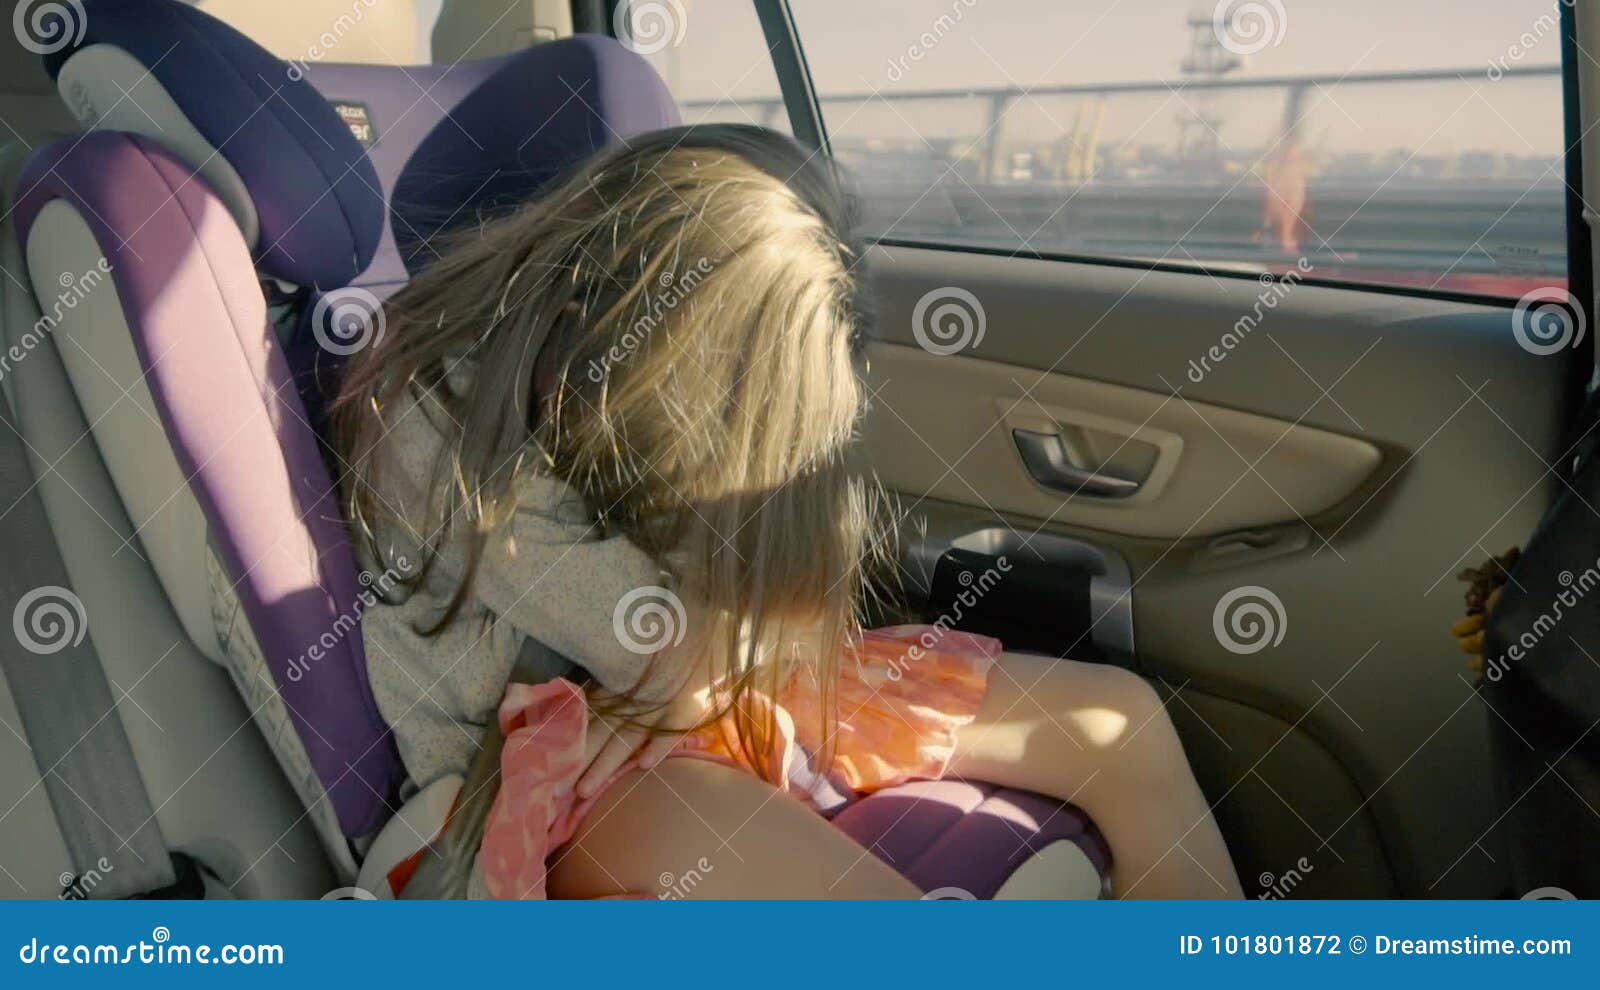 голая сестра в машине фото 51